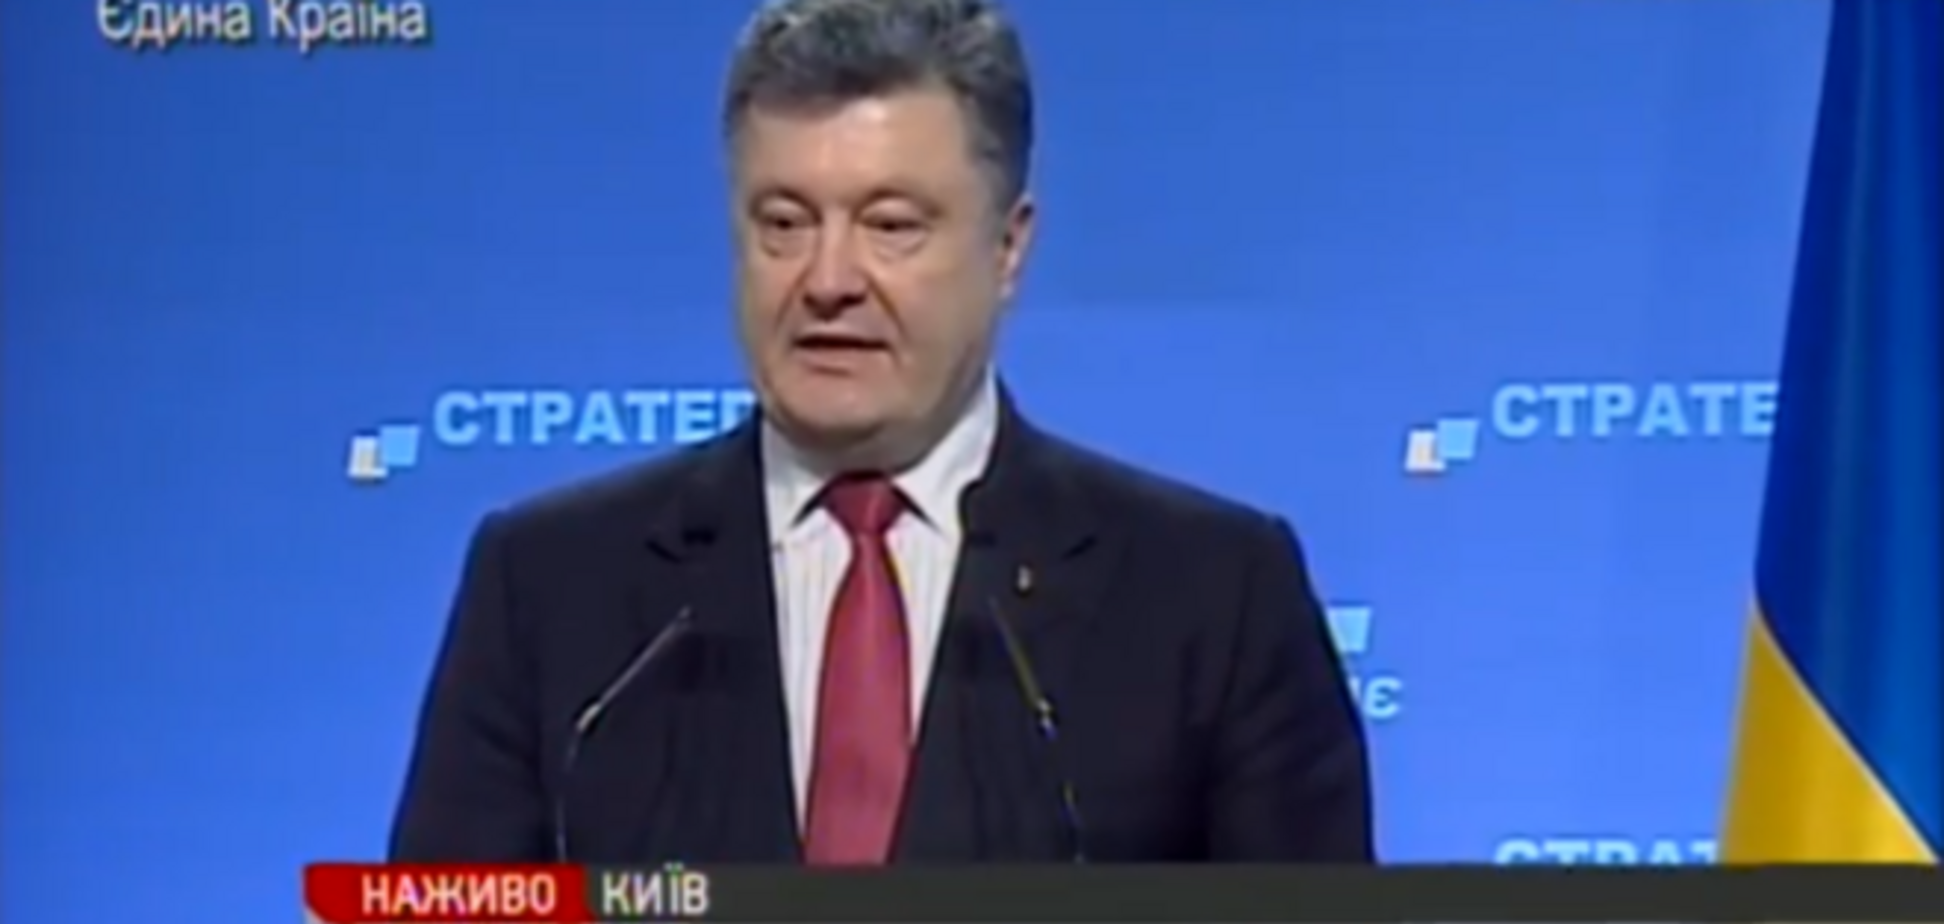 Вибори на Донбасі пройдуть за українським законодавством або не пройдуть взагалі - Порошенко